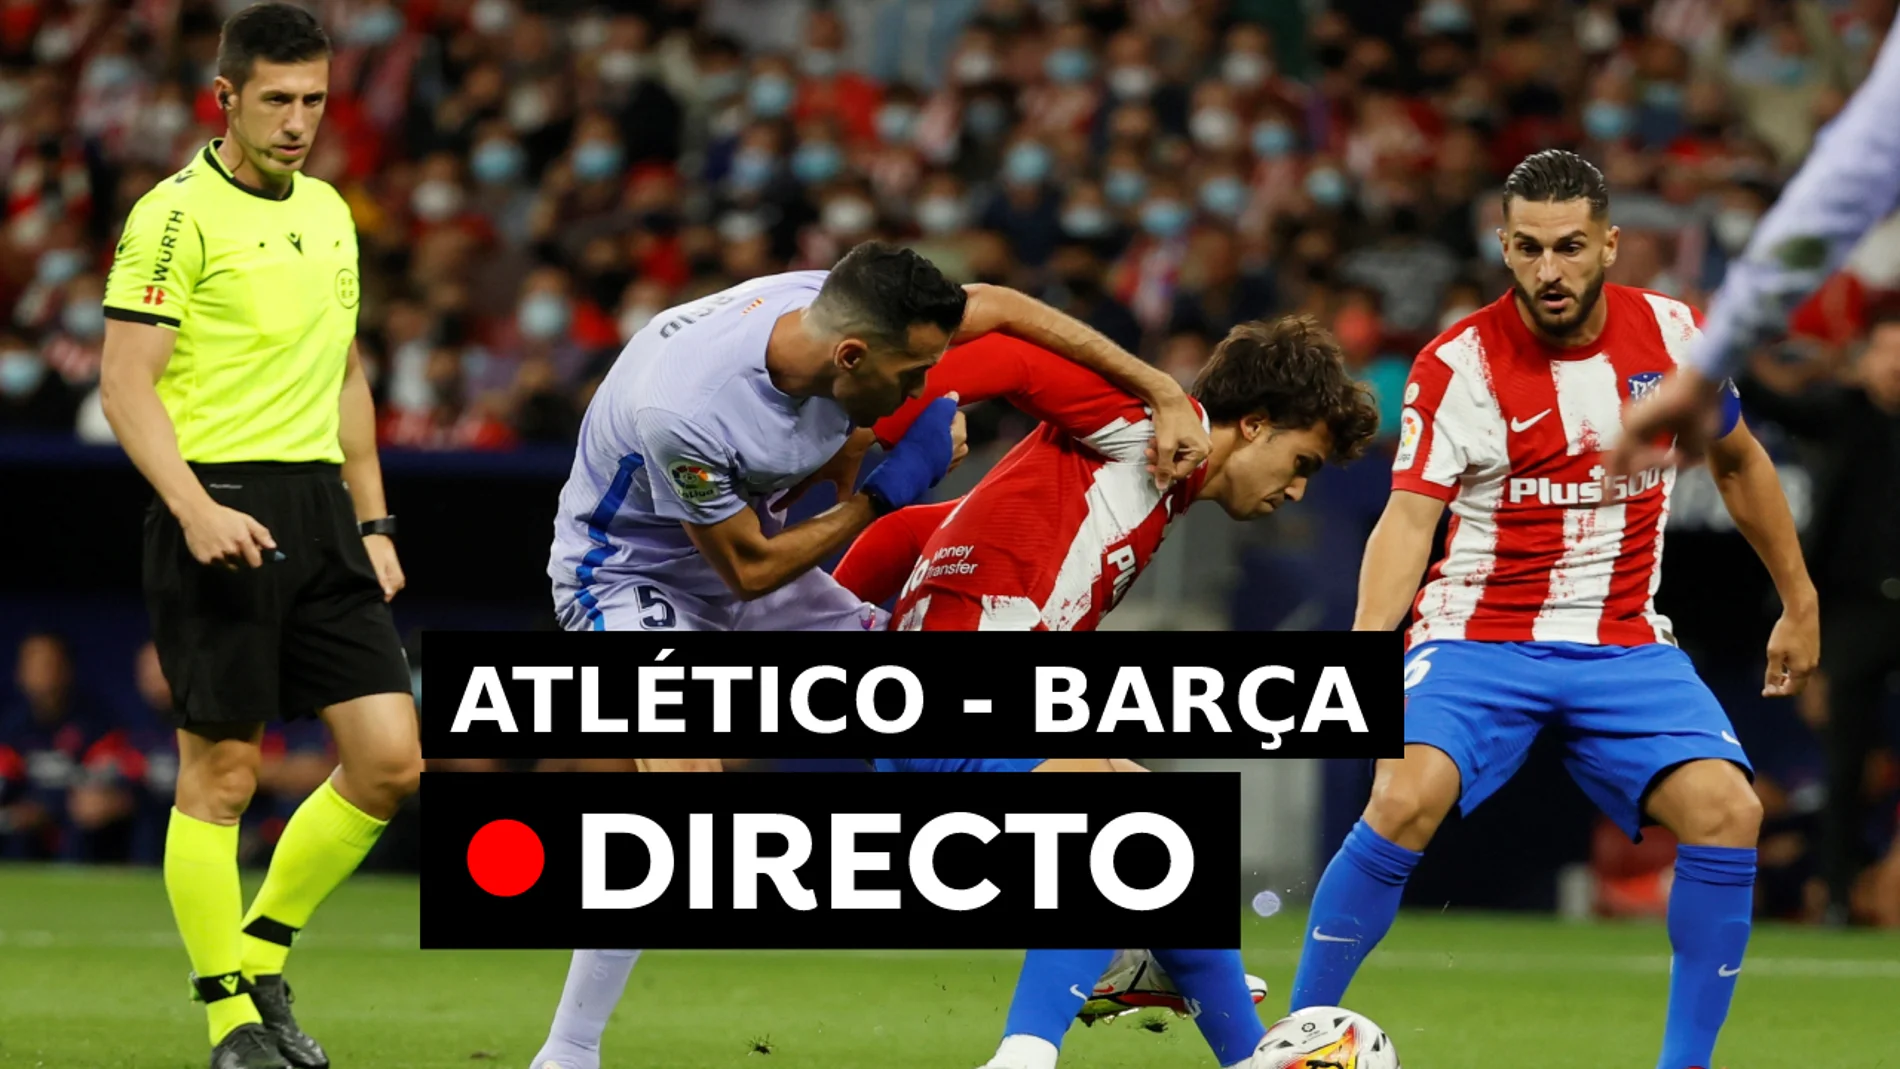 Partido Atlético - Barcelona hoy: Resultado del fútbol, en directo